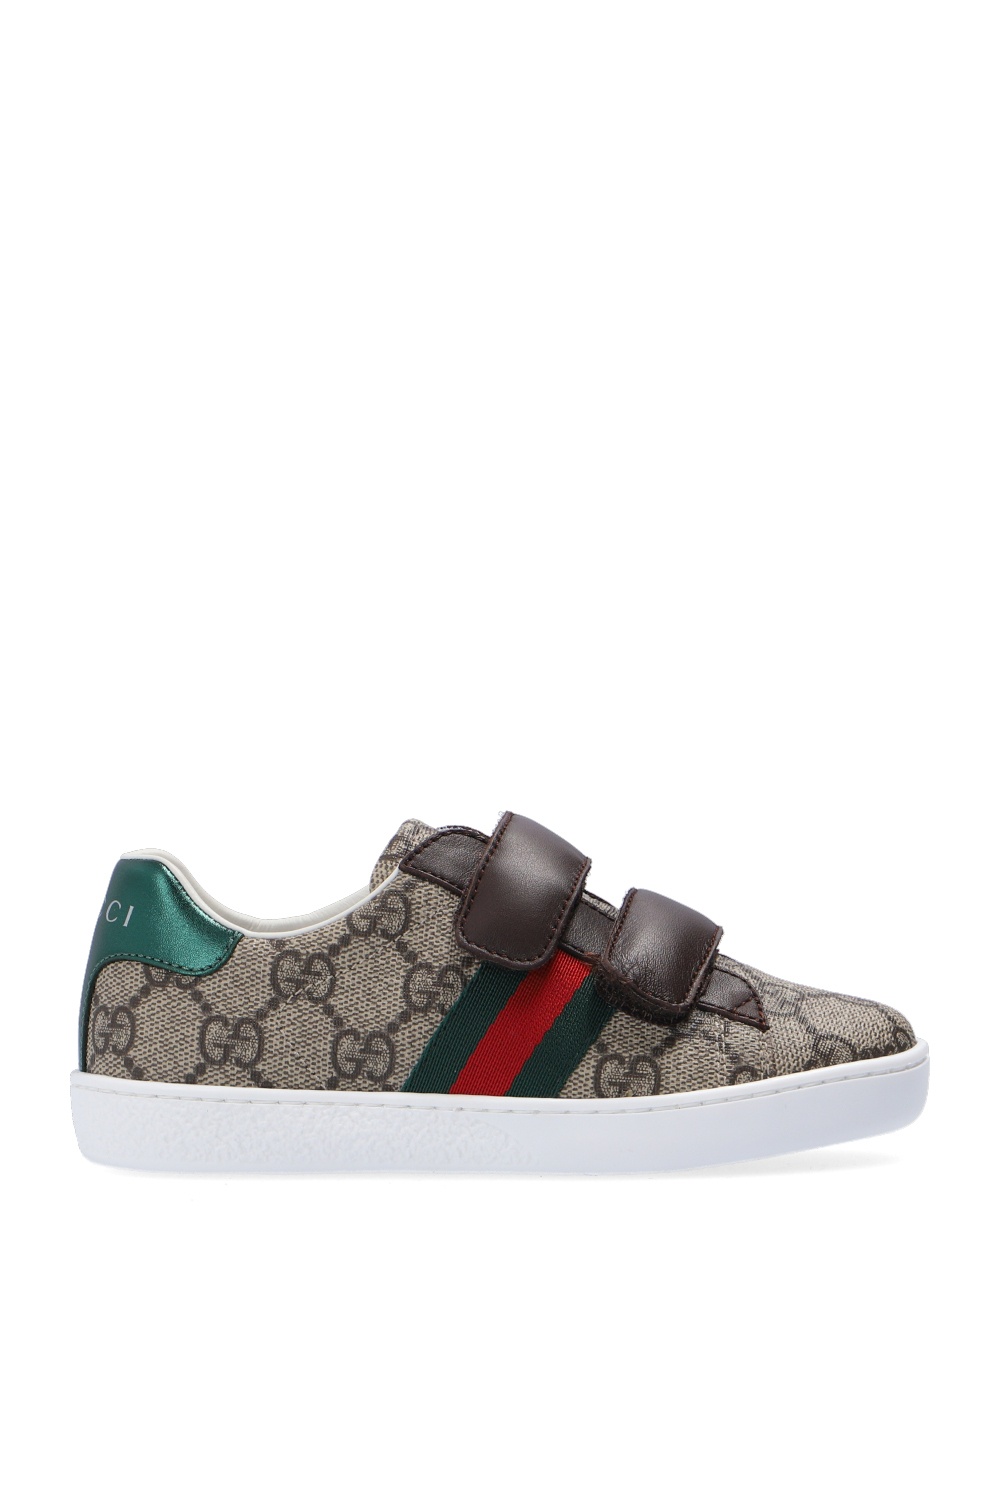 Kids's Kids shoes (25 - Gucci s Marmont Matelassé Leather Belt Bag |  IetpShops | Gucci Kids 'Ace' sneakers | 39)